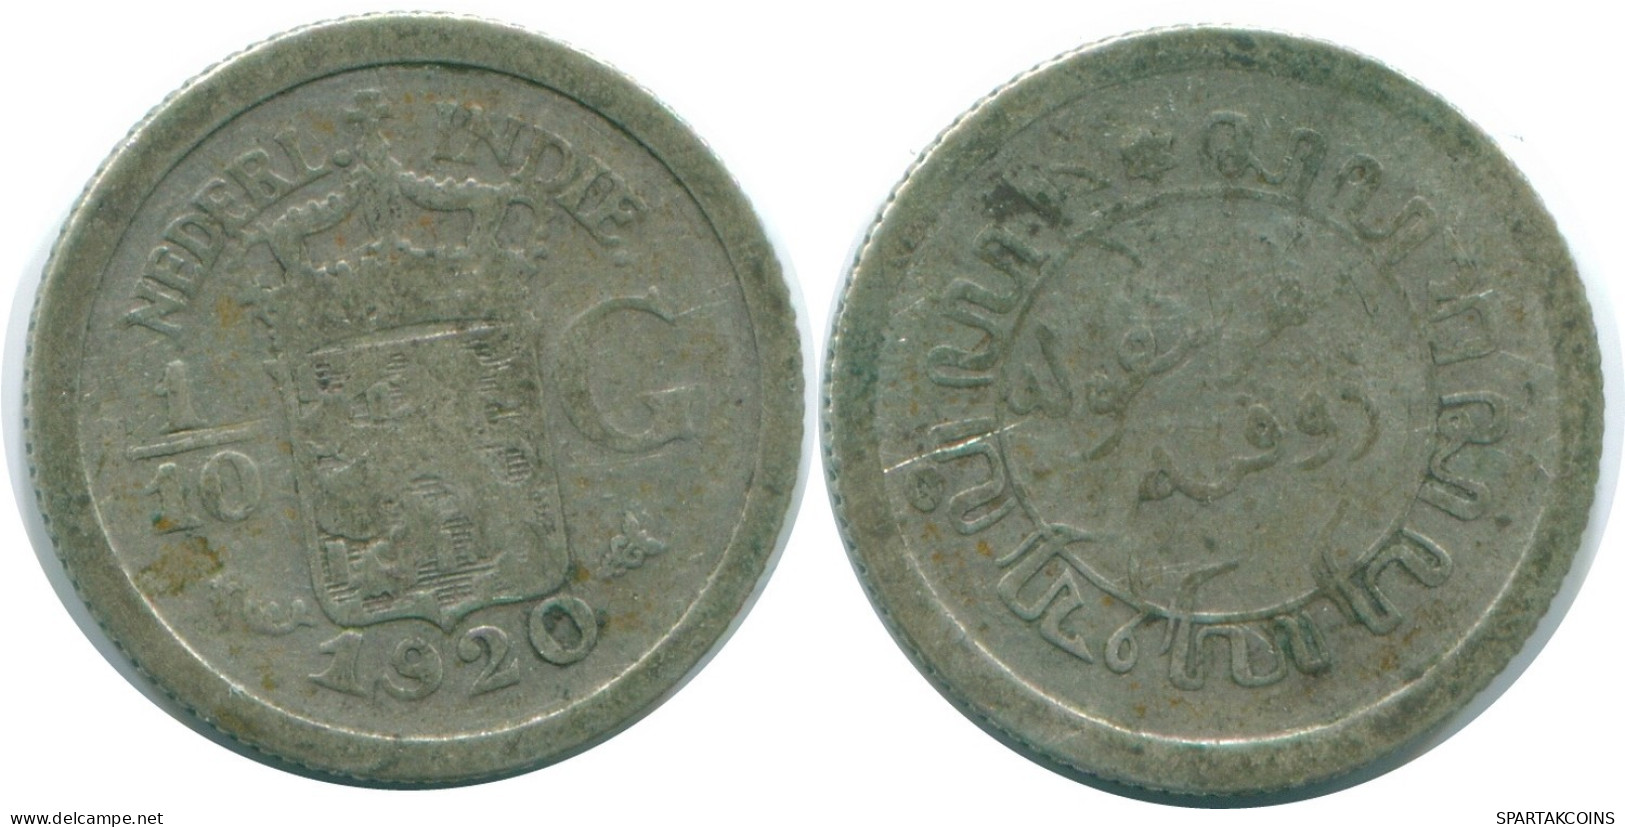 1/10 GULDEN 1920 NETHERLANDS EAST INDIES SILVER Colonial Coin #NL13355.3.U.A - Niederländisch-Indien